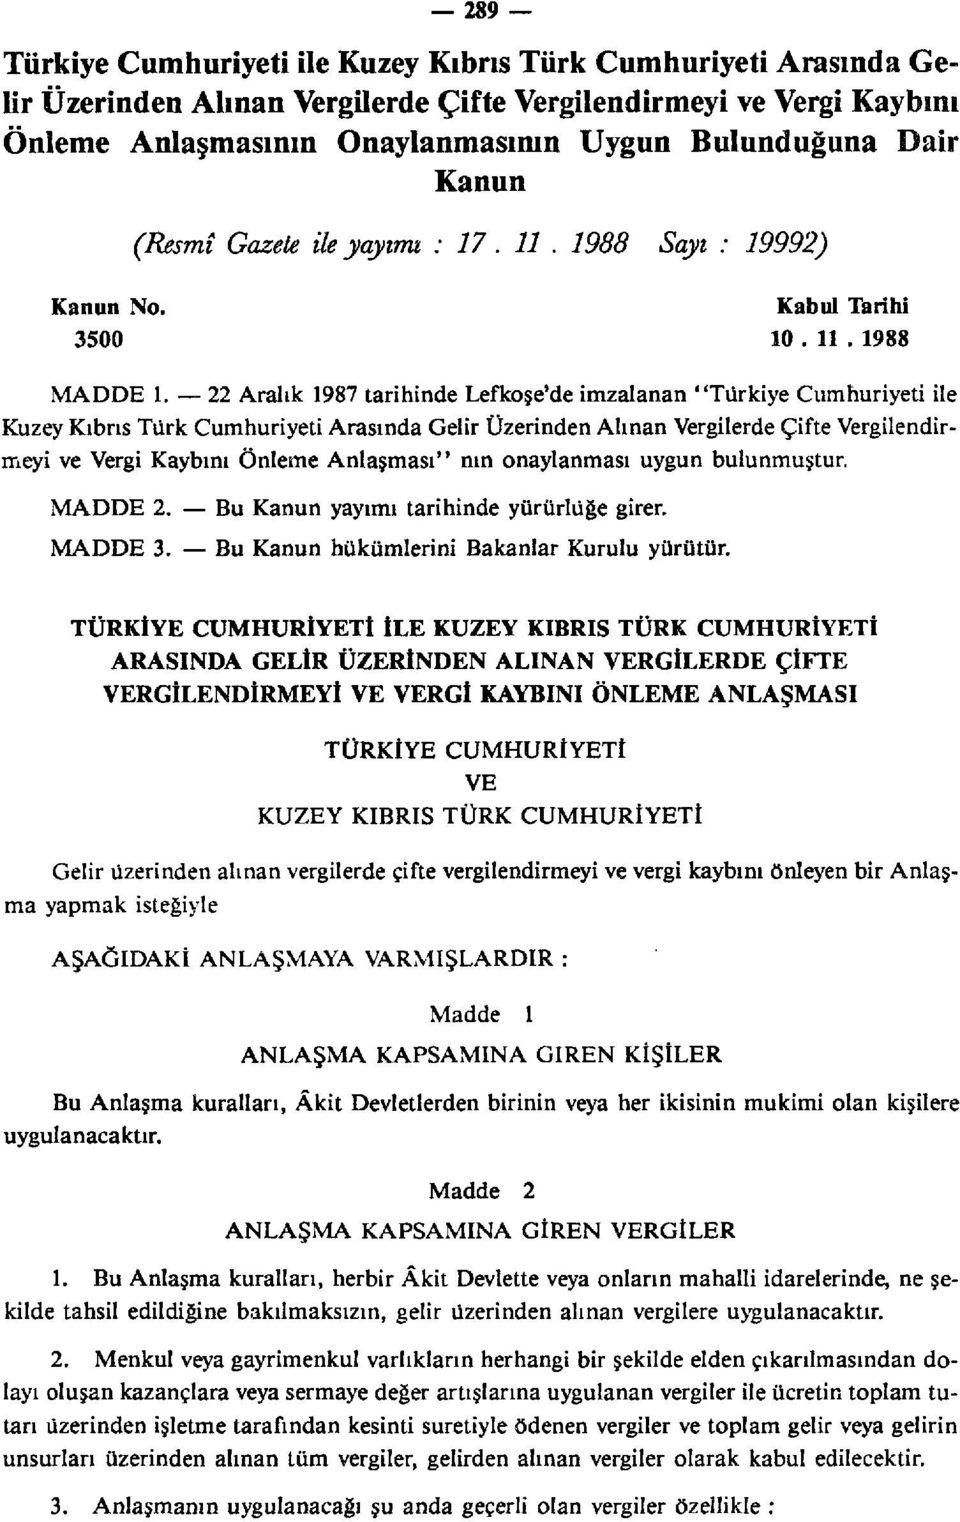 22 Aralık 1987 tarihinde Lefkoşe'de imzalanan "Türkiye Cumhuriyeti ile Kuzey Kıbrıs Türk Cumhuriyeti Arasında Gelir Üzerinden Alınan Vergilerde Çifte Vergilendirmeyi ve Vergi Kaybını Önleme